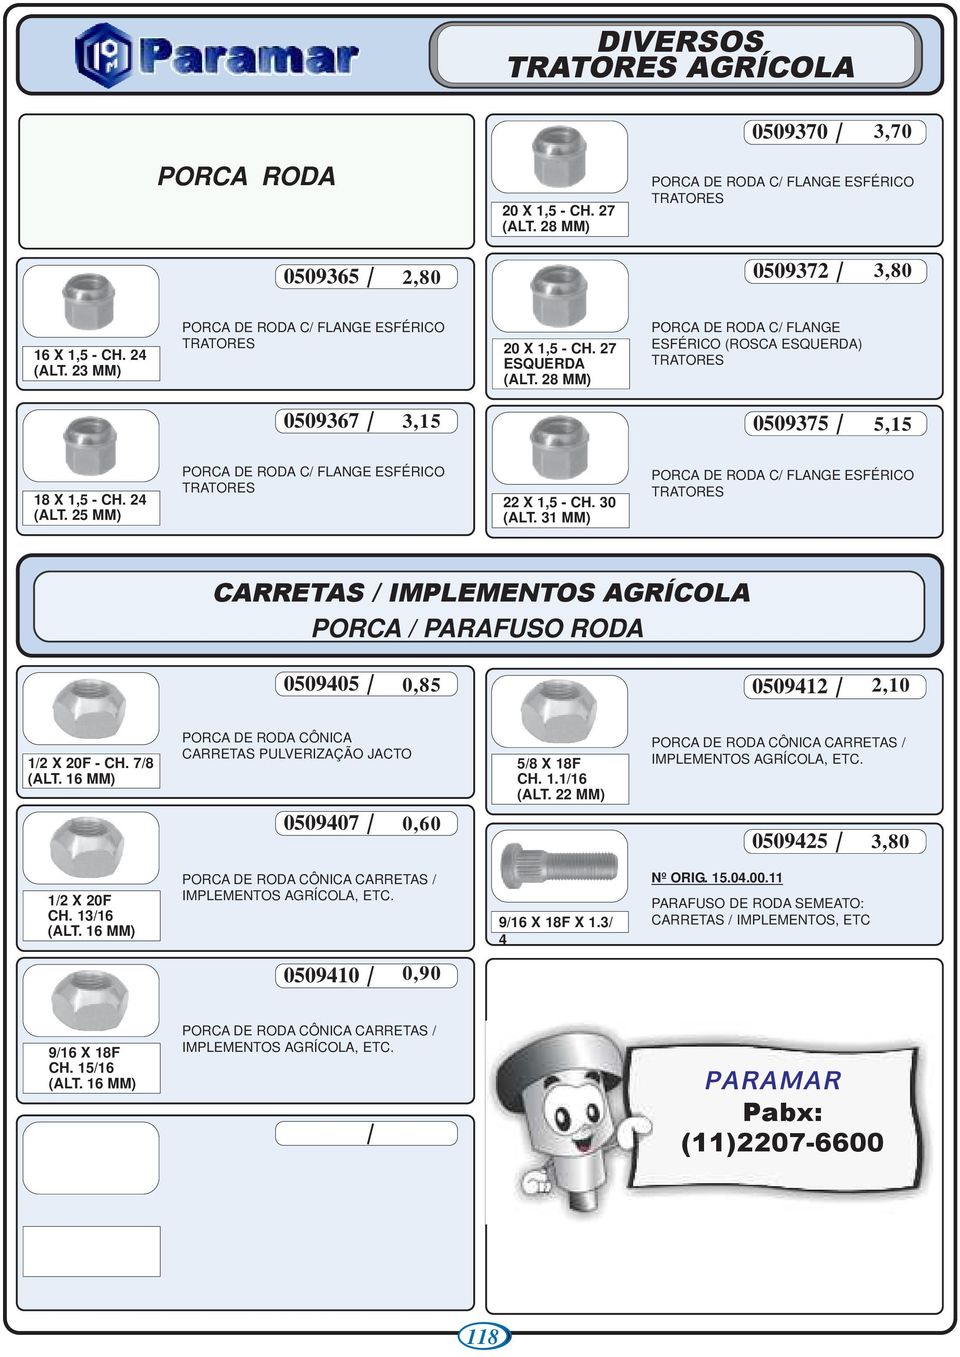 25 MM) PORCA DE RODA C/ FLANGE ESFÉRICO TRATORES 22 X 1,5 - CH. 30 (ALT.